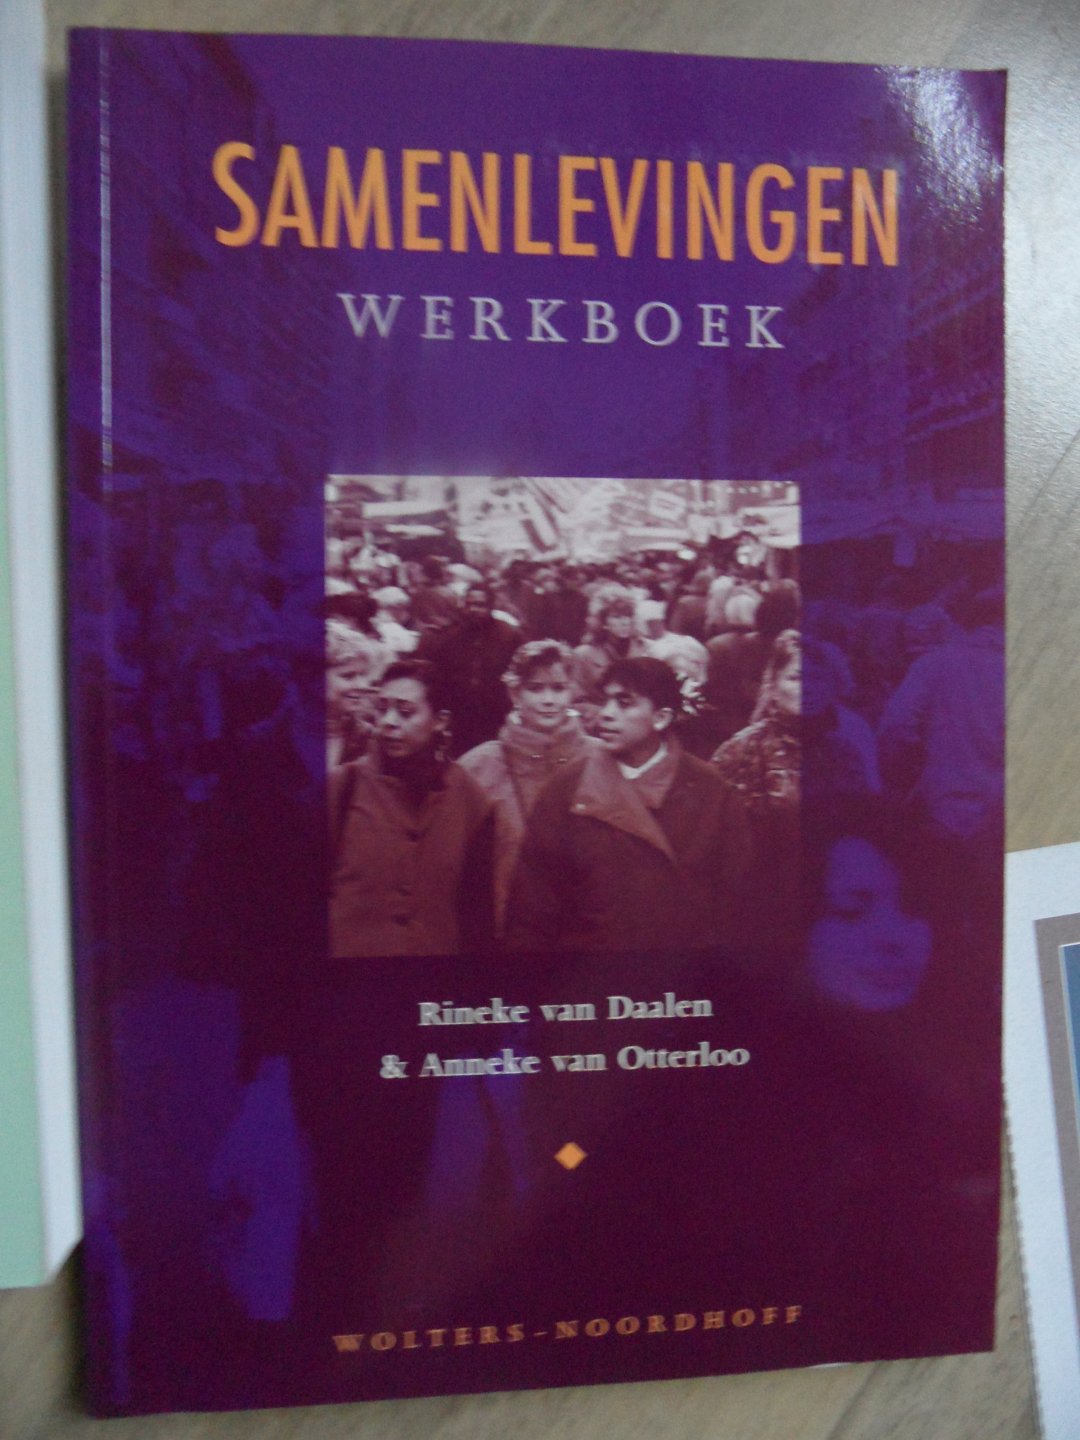 Daalen, Rineke van & Otterloo, anneke van - Werkboek Samenlevingen.